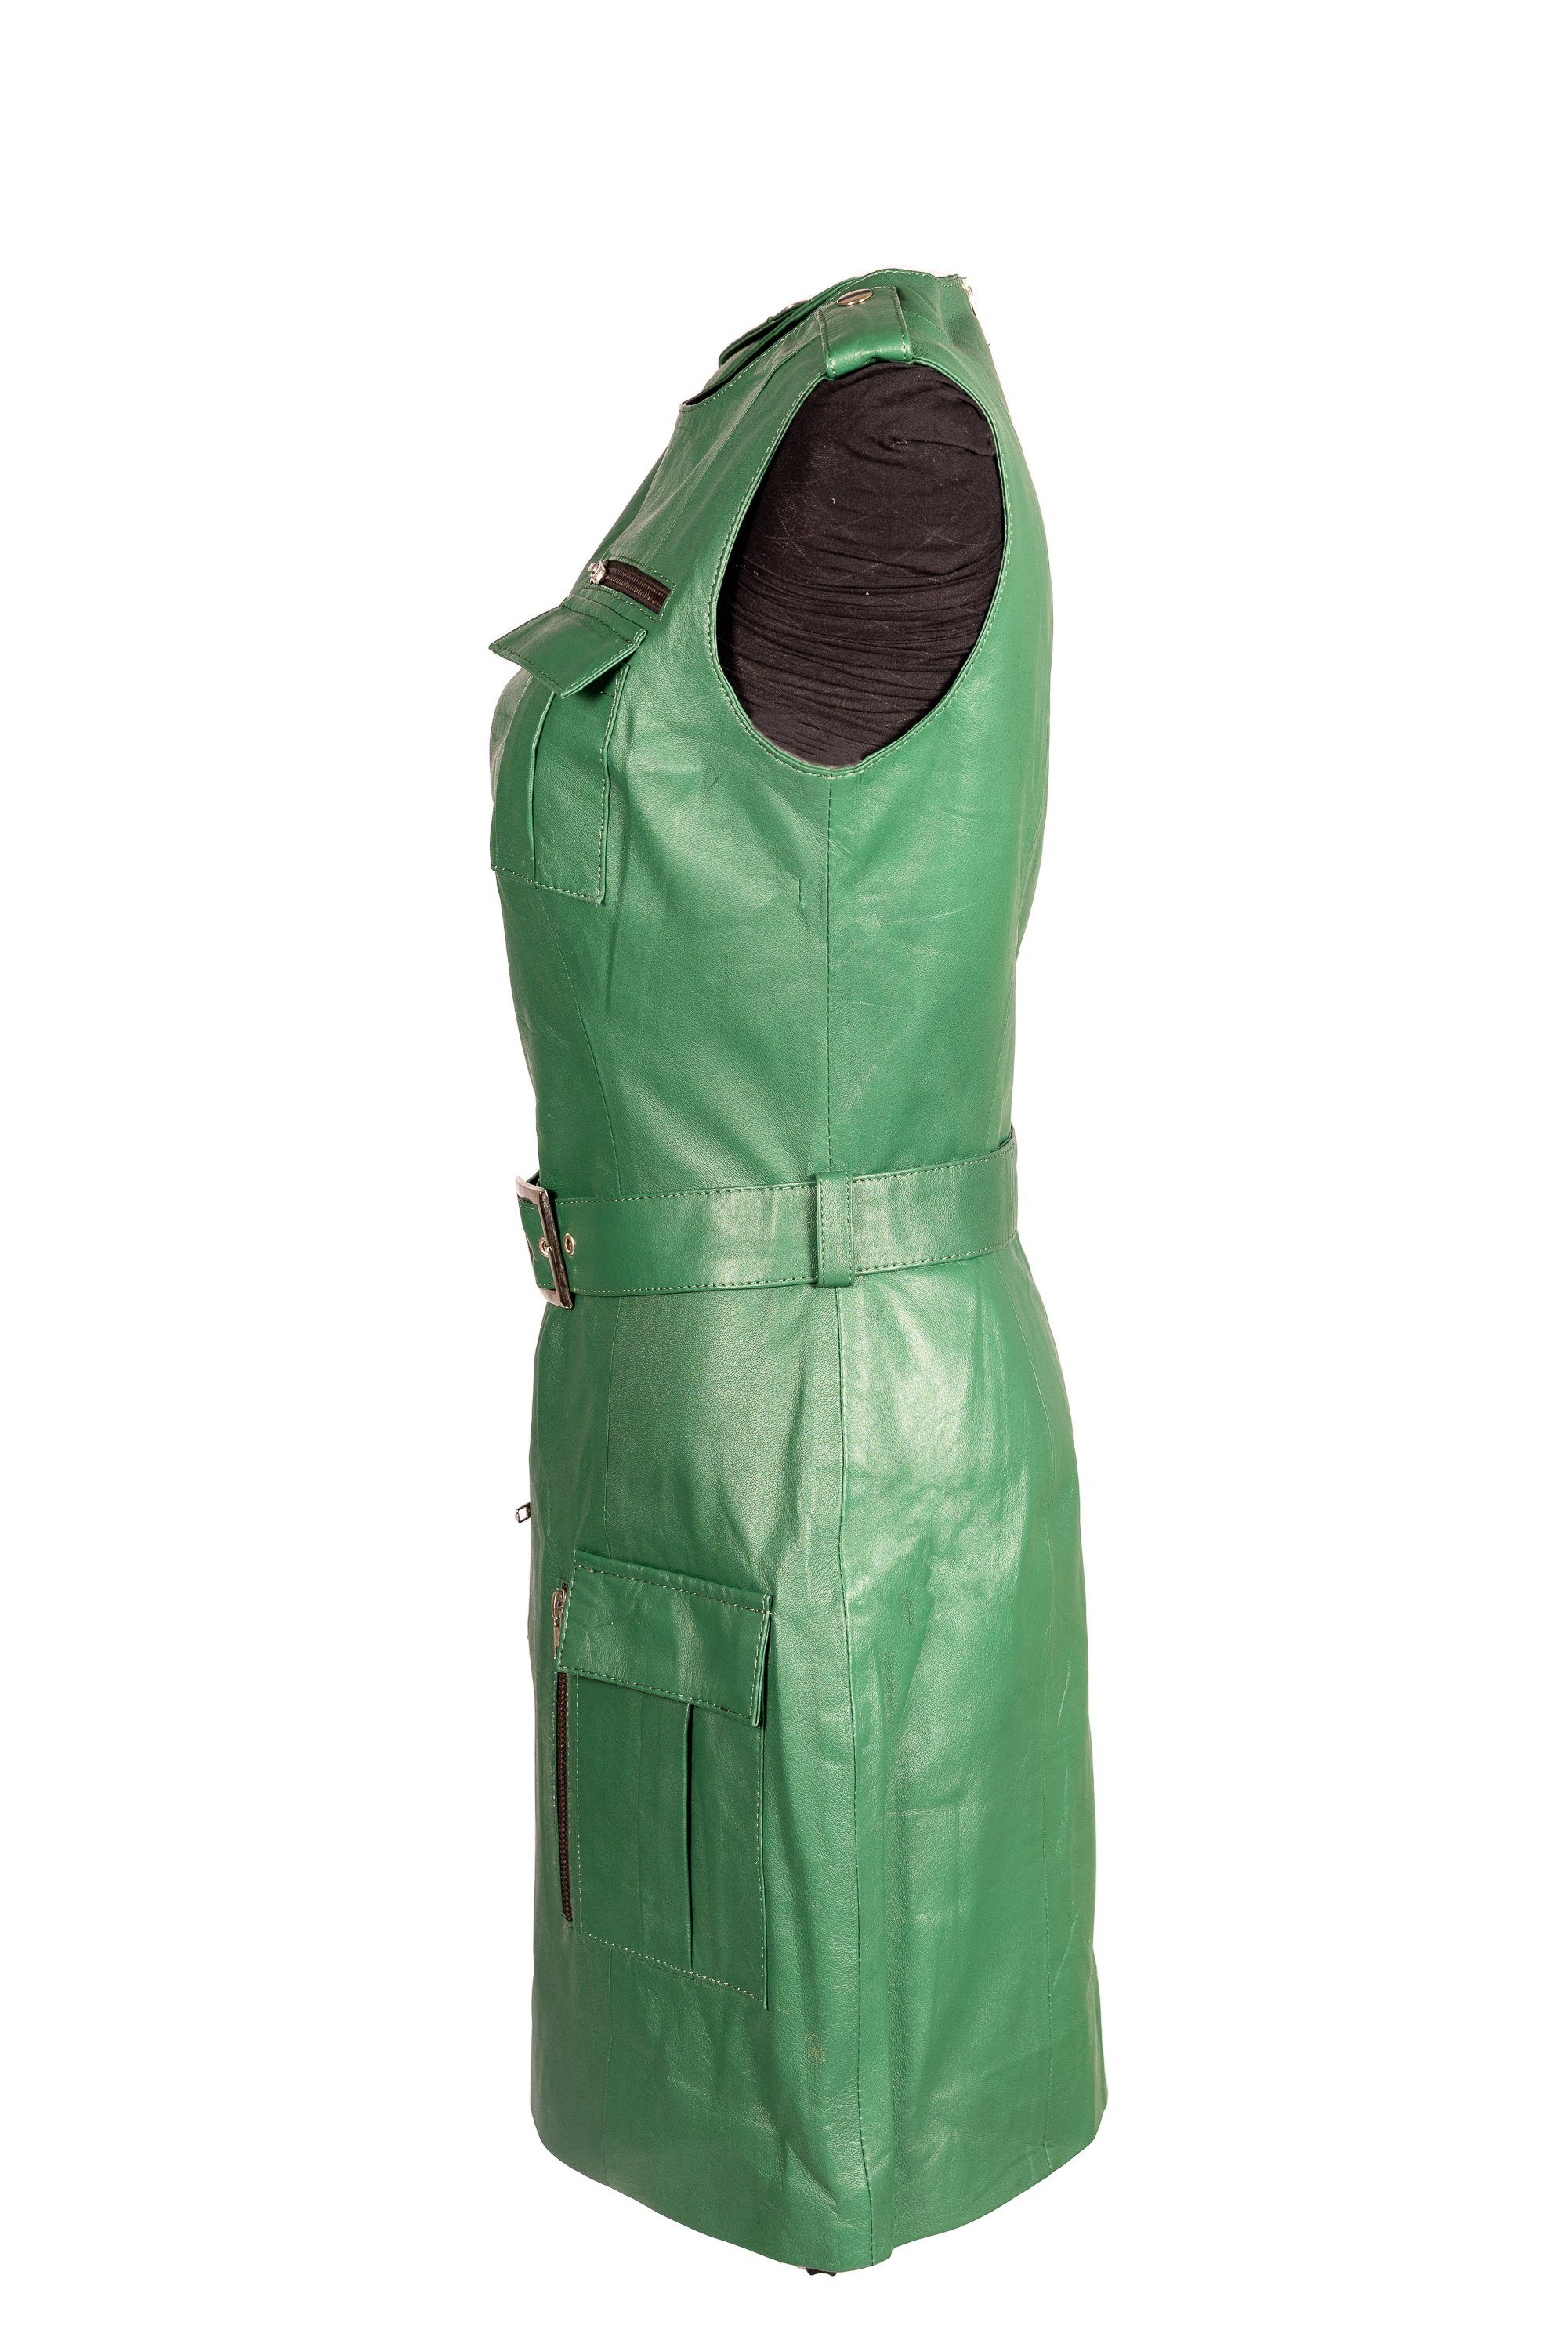 Be aus mit Lederkleid Noble Sportliches Hills Beverly grünes grün Lammnappa Lederkleid Cargotaschen